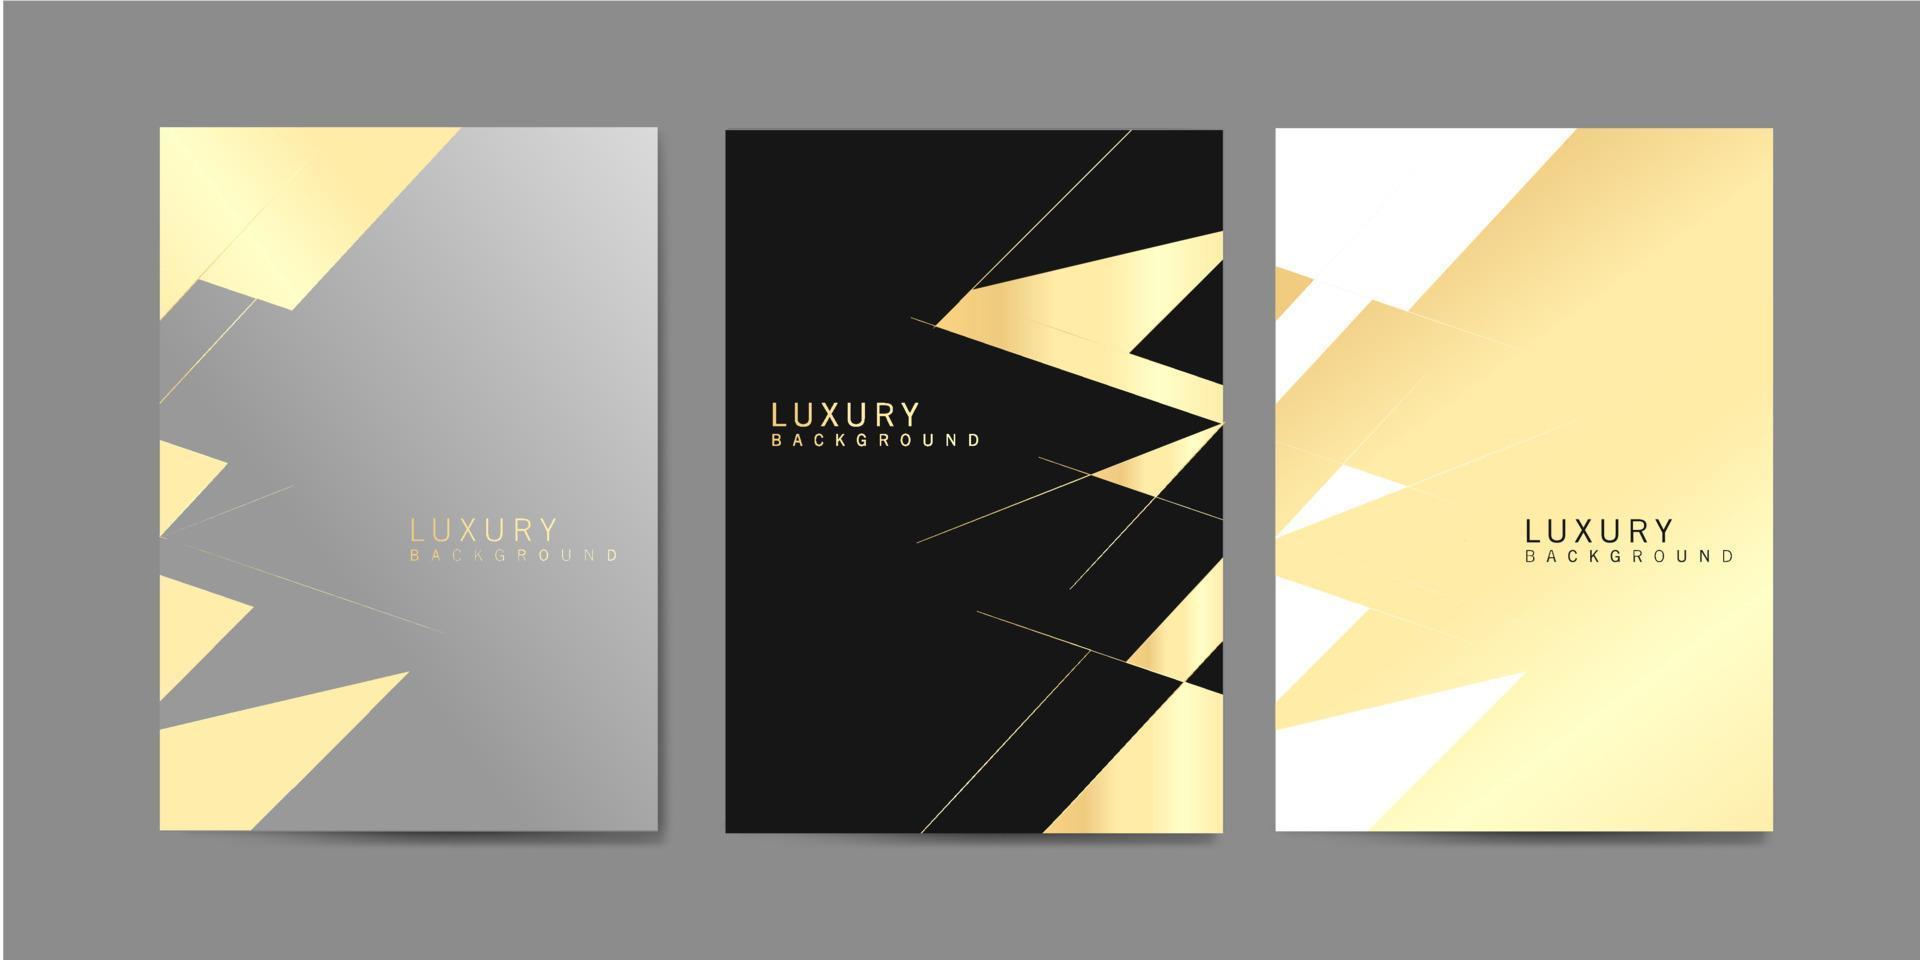 capas de luxo com design minimalista. fundos pretos e dourados para seu projeto. aplicável para banners, cartazes, cartazes, folhetos etc. vetor eps10